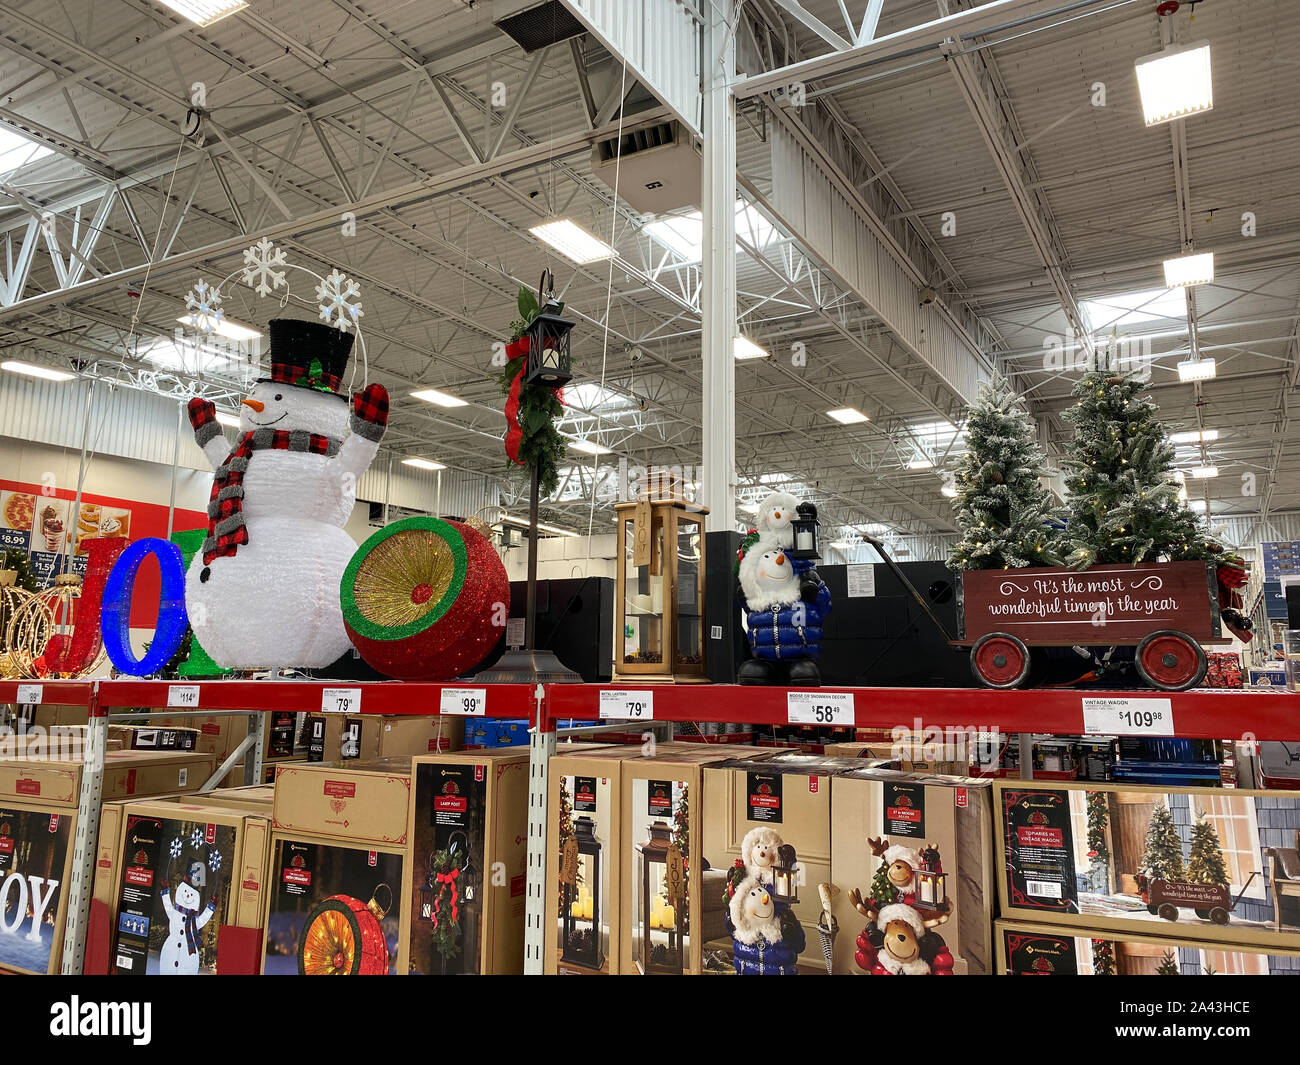 Orlando,FL/USA -10/11/19: La decoración navideña pasillo de una tienda Sams  Club con una variedad de nuevas decoraciones de Navidad listos para comprar  Fotografía de stock - Alamy